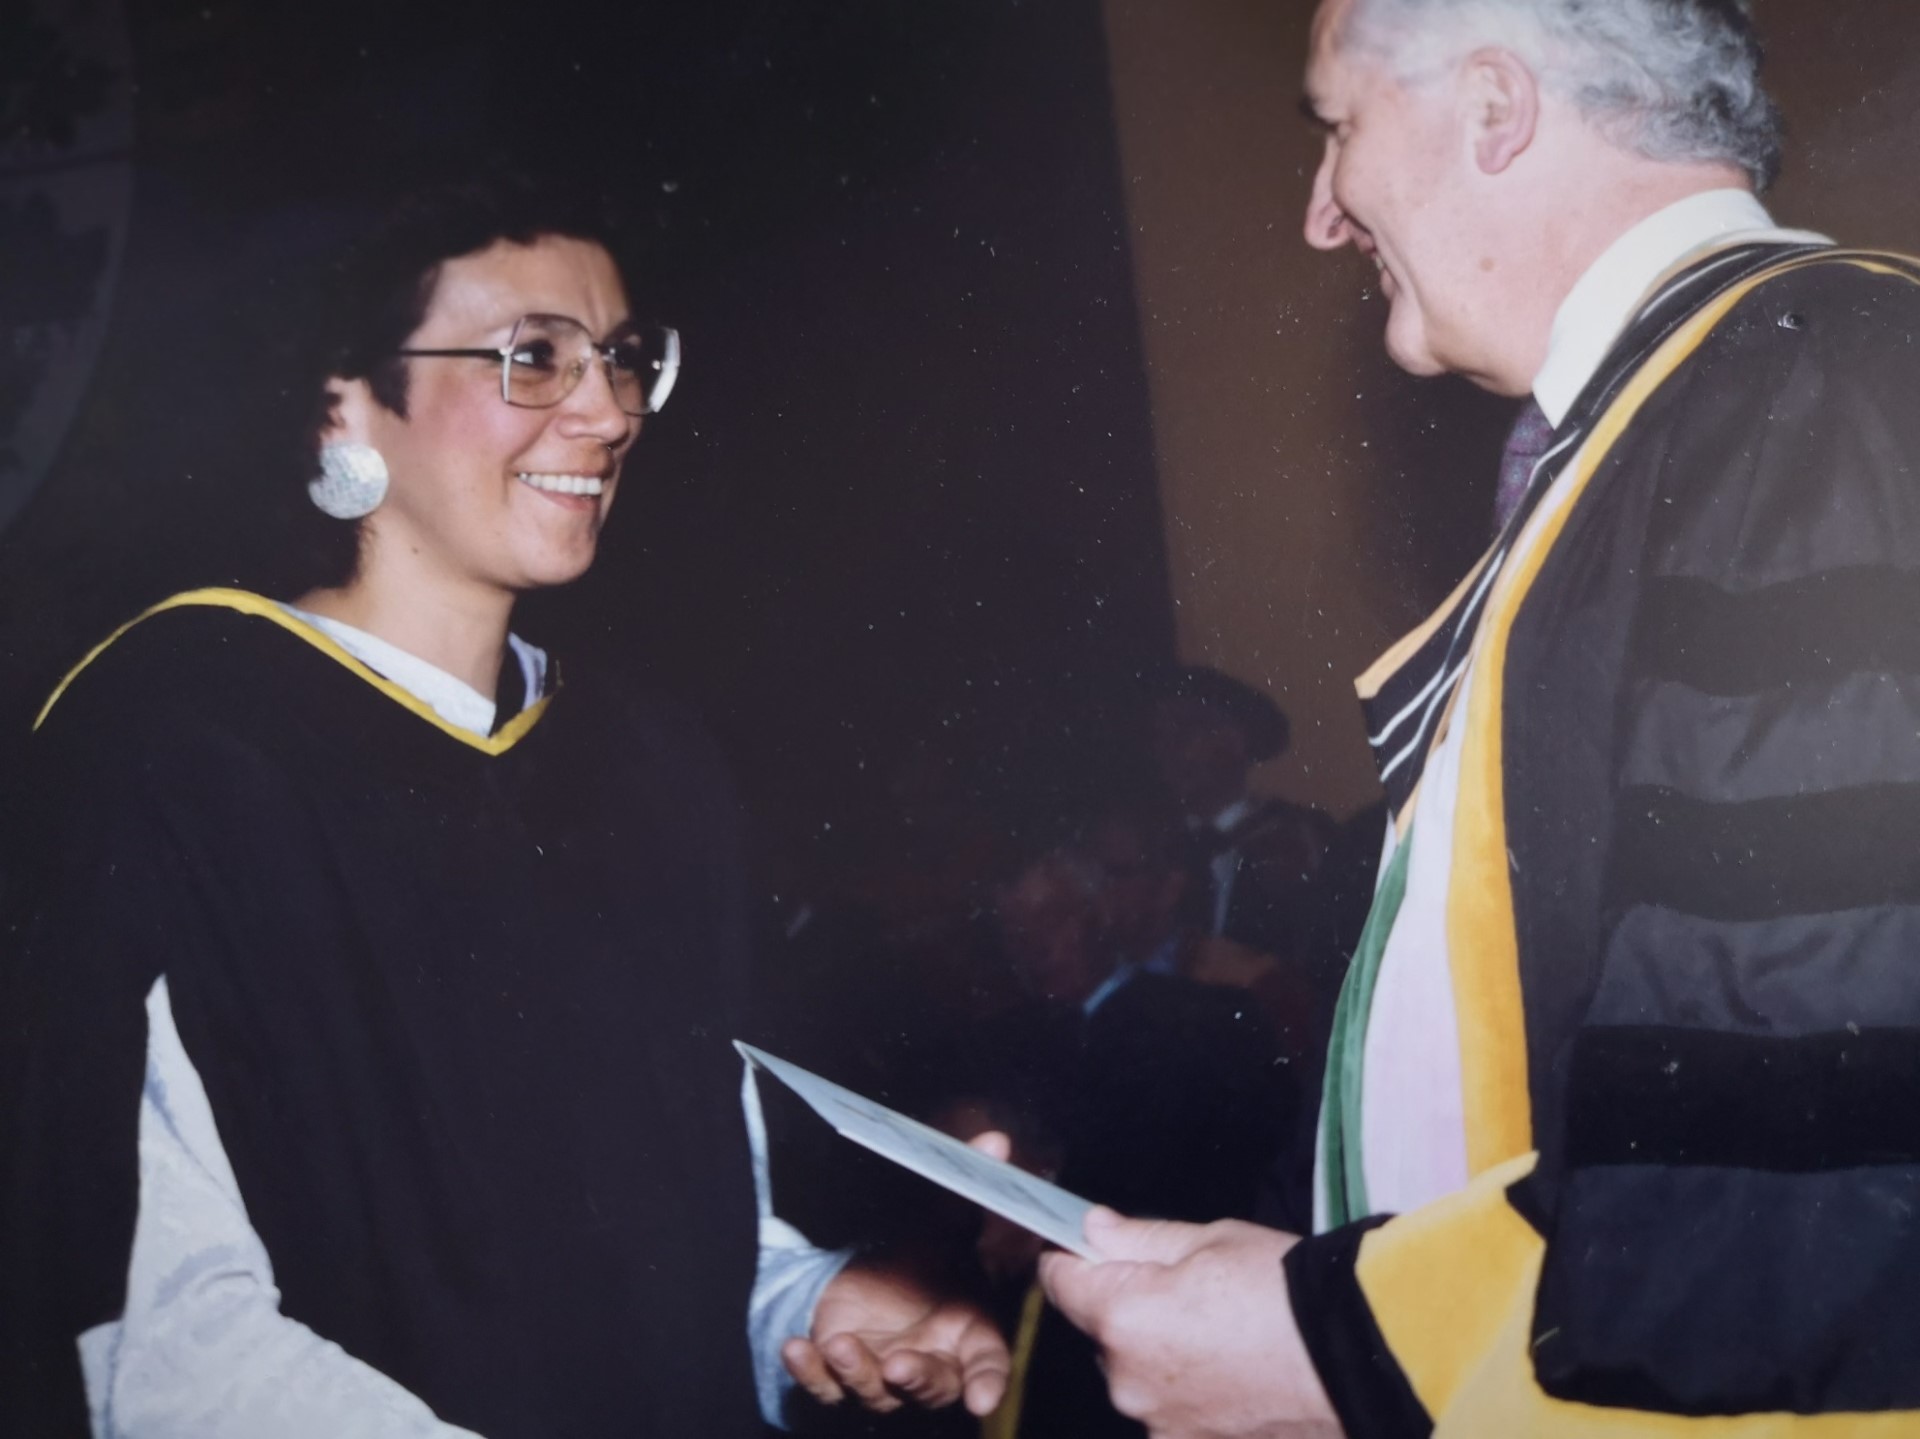 Senator McCallum graduates with a dentistry degree in 1990.